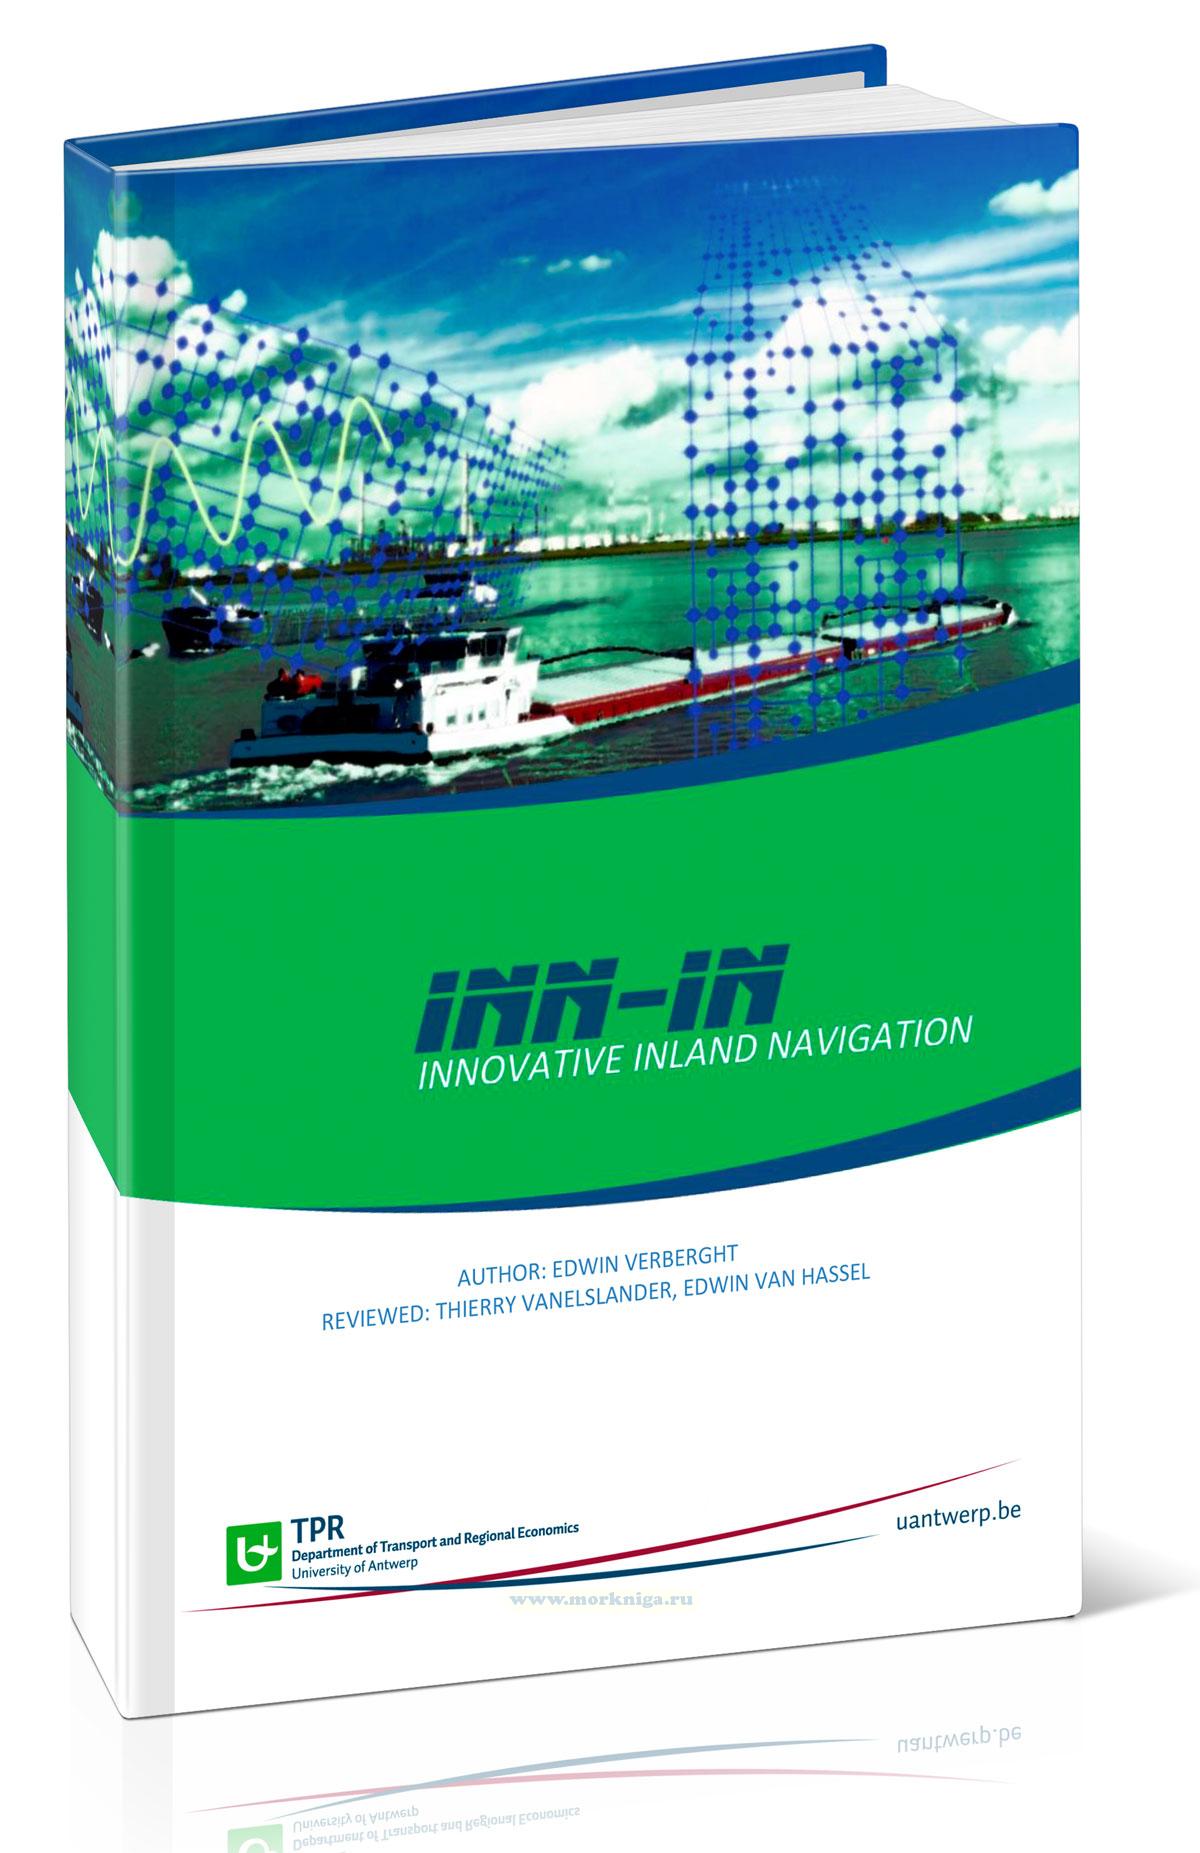 INN-IN: Innovative Inland Navigation/Инновационная навигация внутреннего судоходства